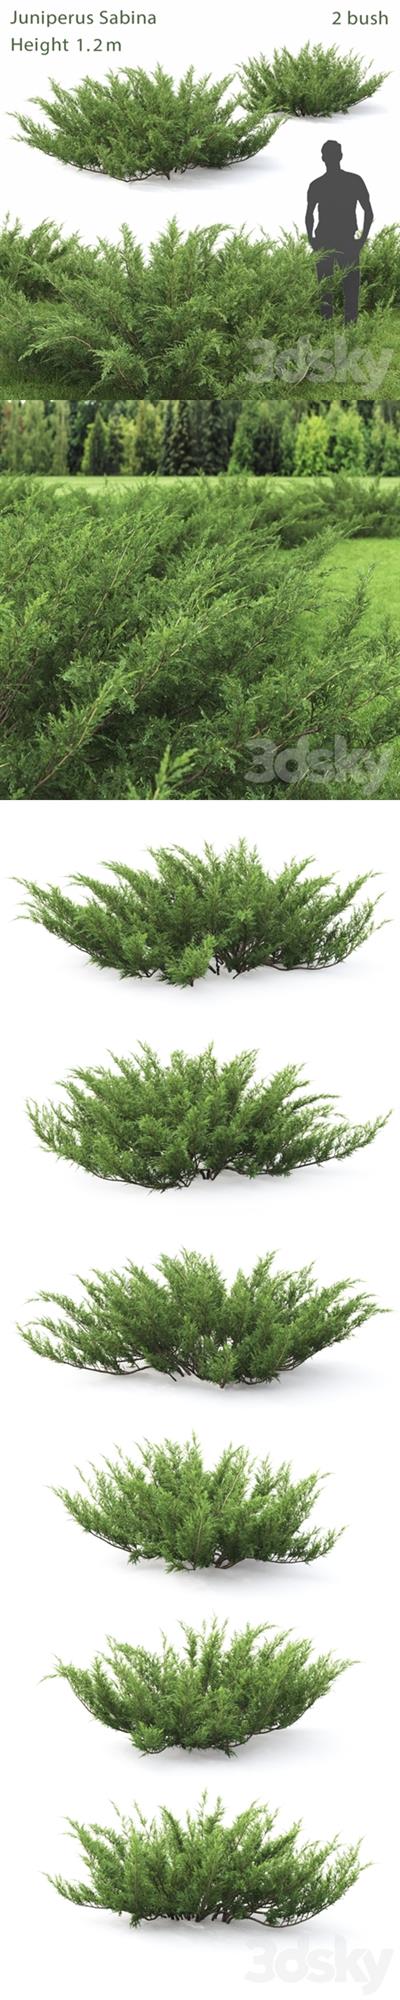 Juniperus Cossack # 1